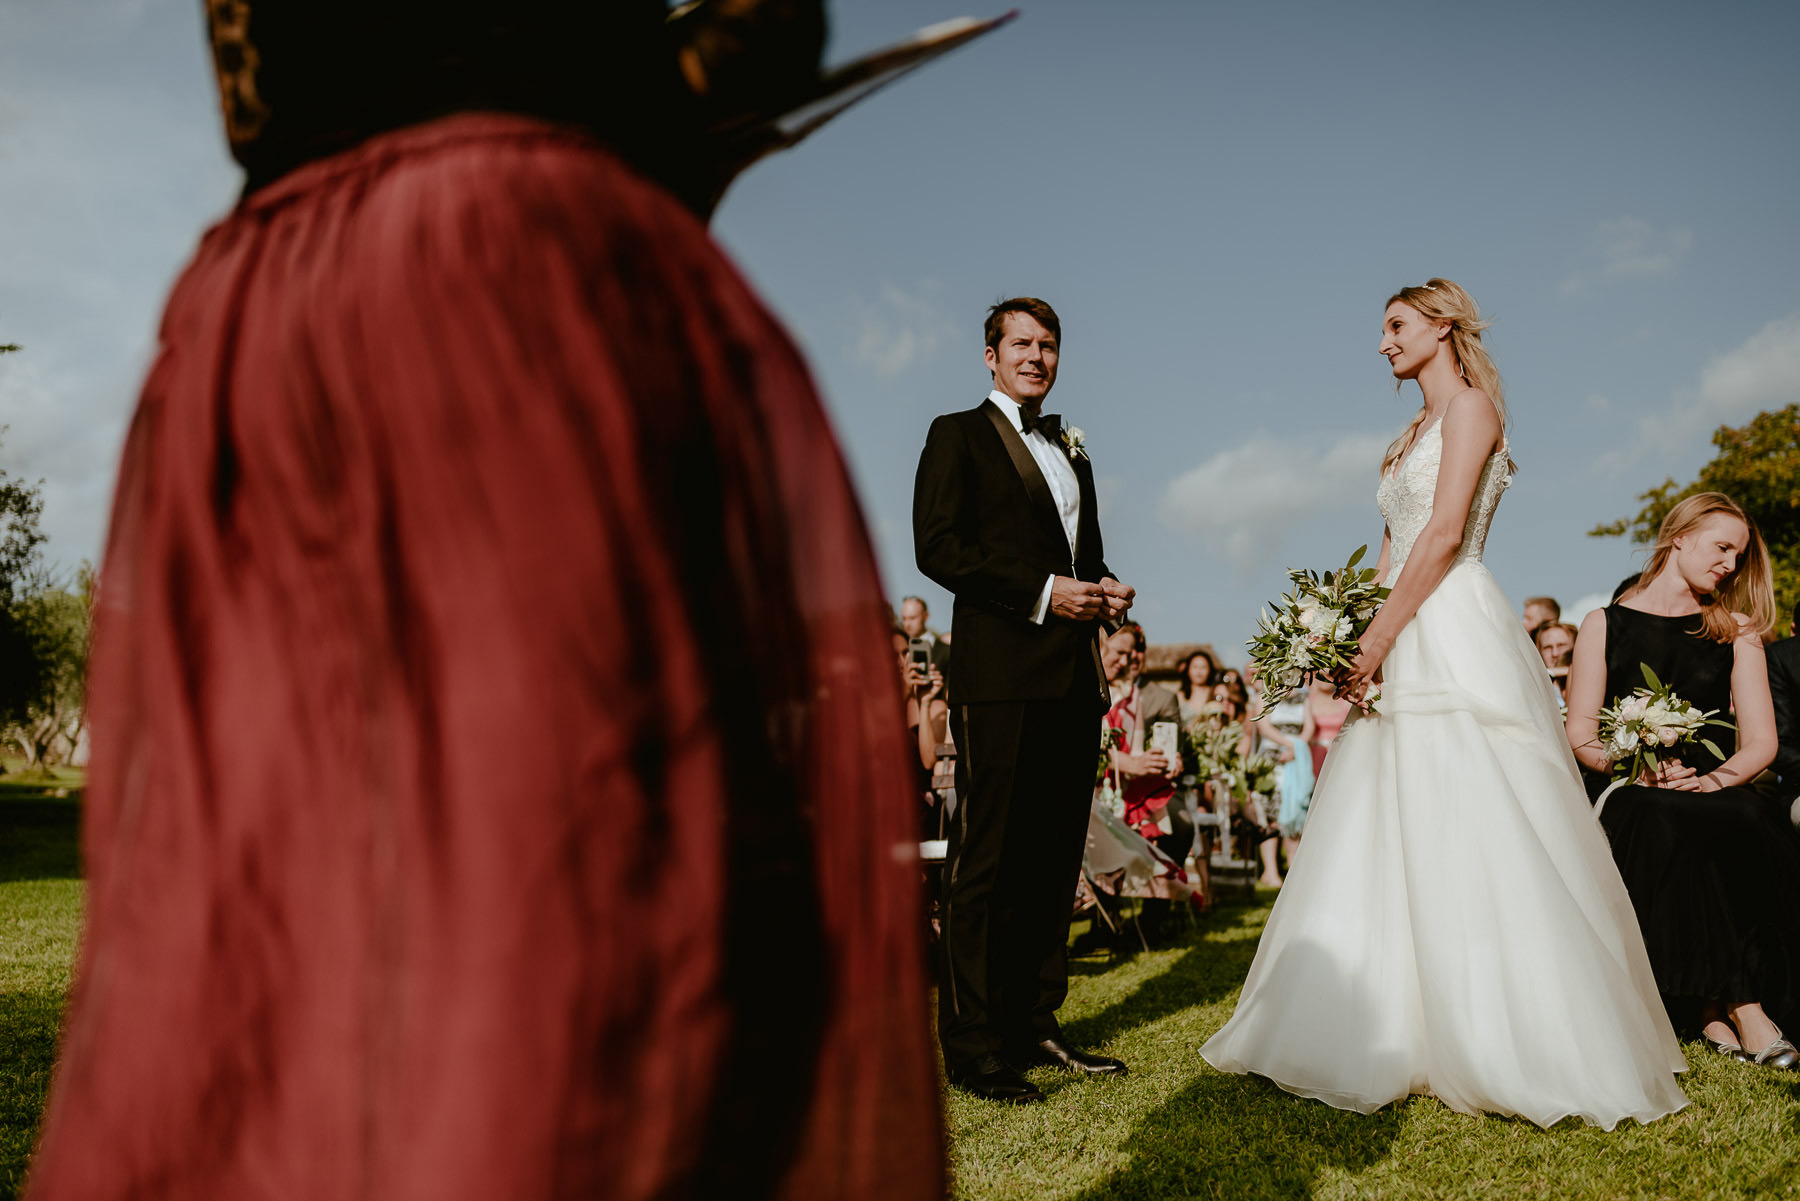 Siena wedding photographer borgo scopeto outdoor rustic ceremony